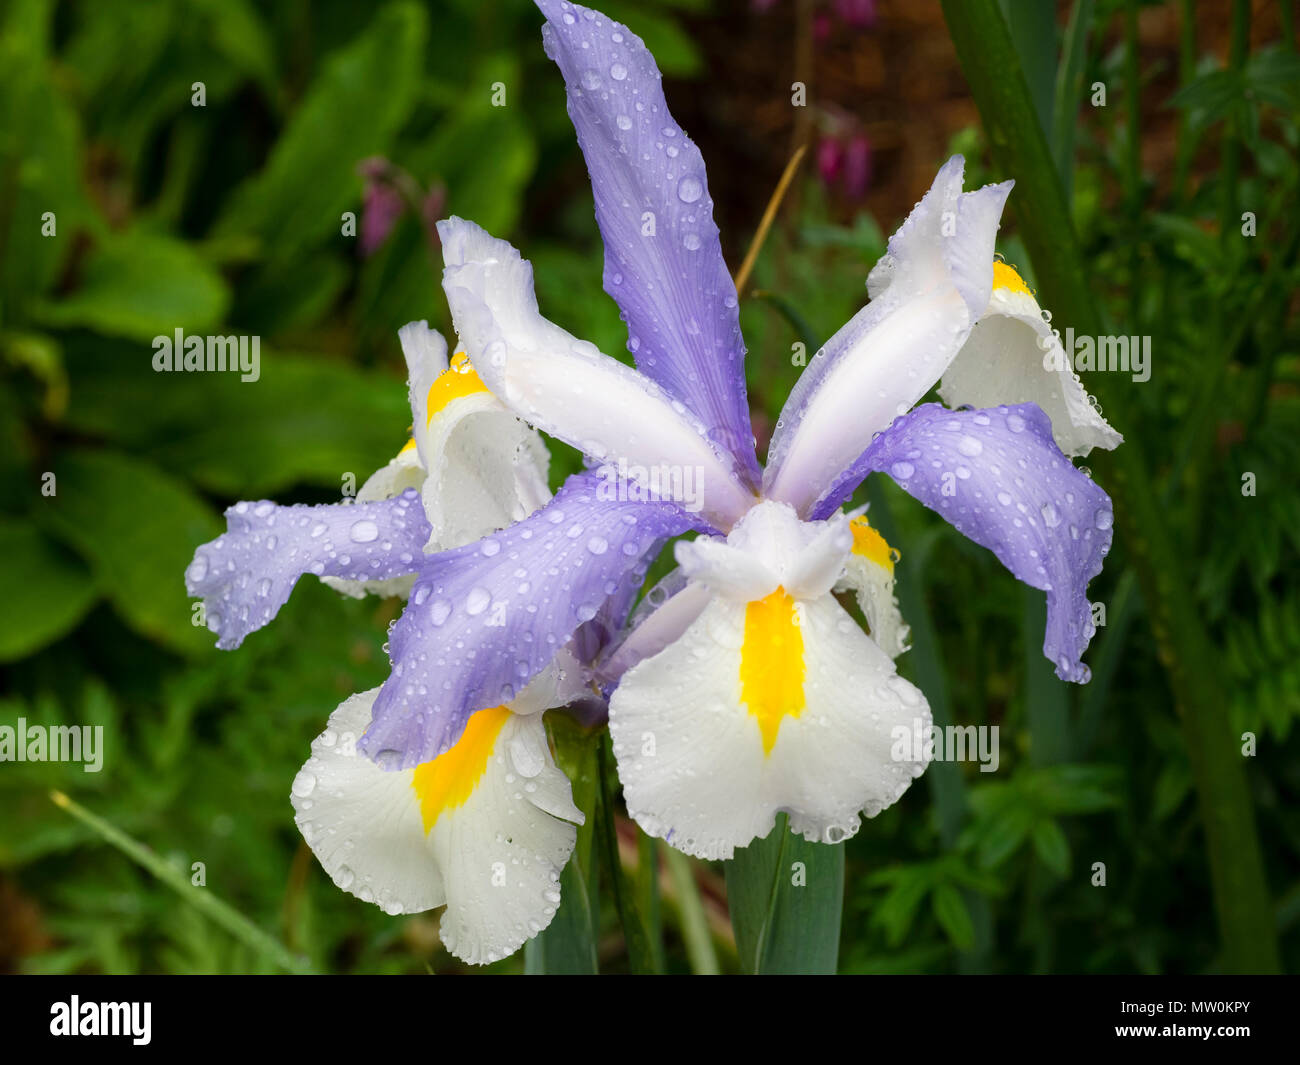 Cade in bianco e azzurro standard dell'estate precoce fioritura olandese iris, Iris x hollandica 'Silvery bellezza' Foto Stock